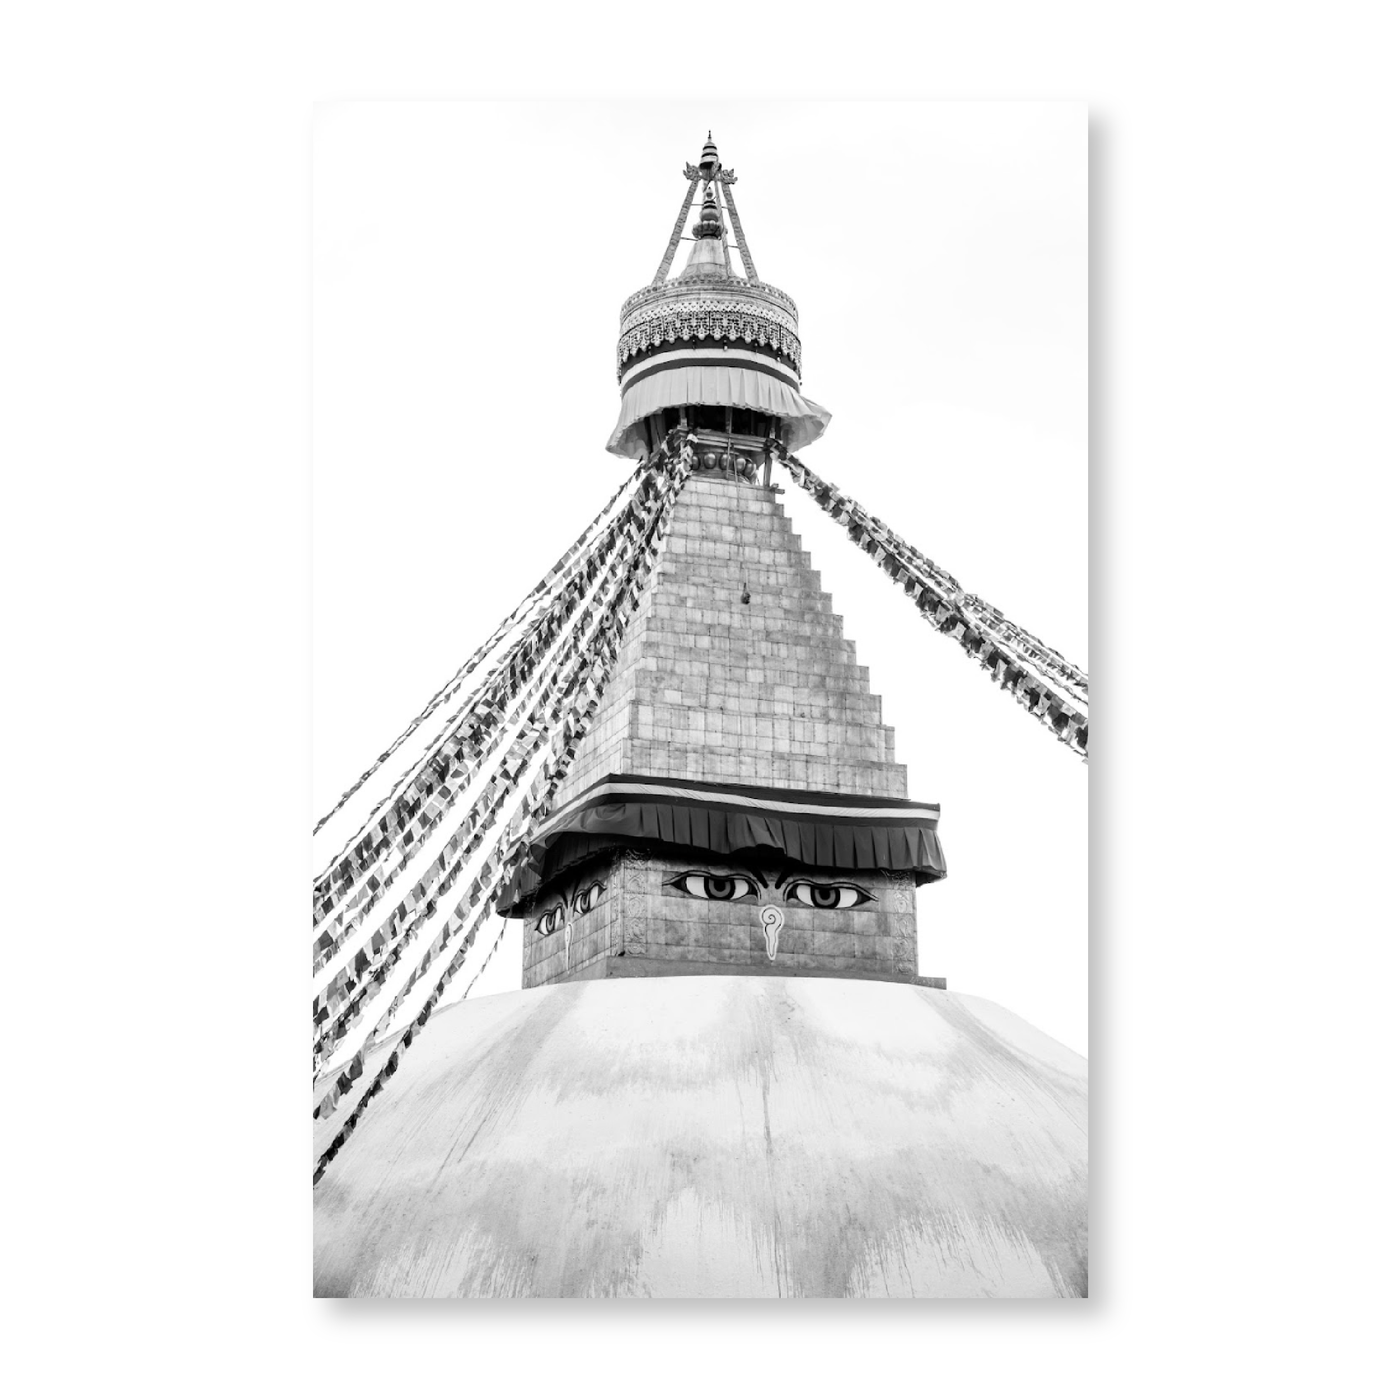 Buddhist Stupa In Nepal